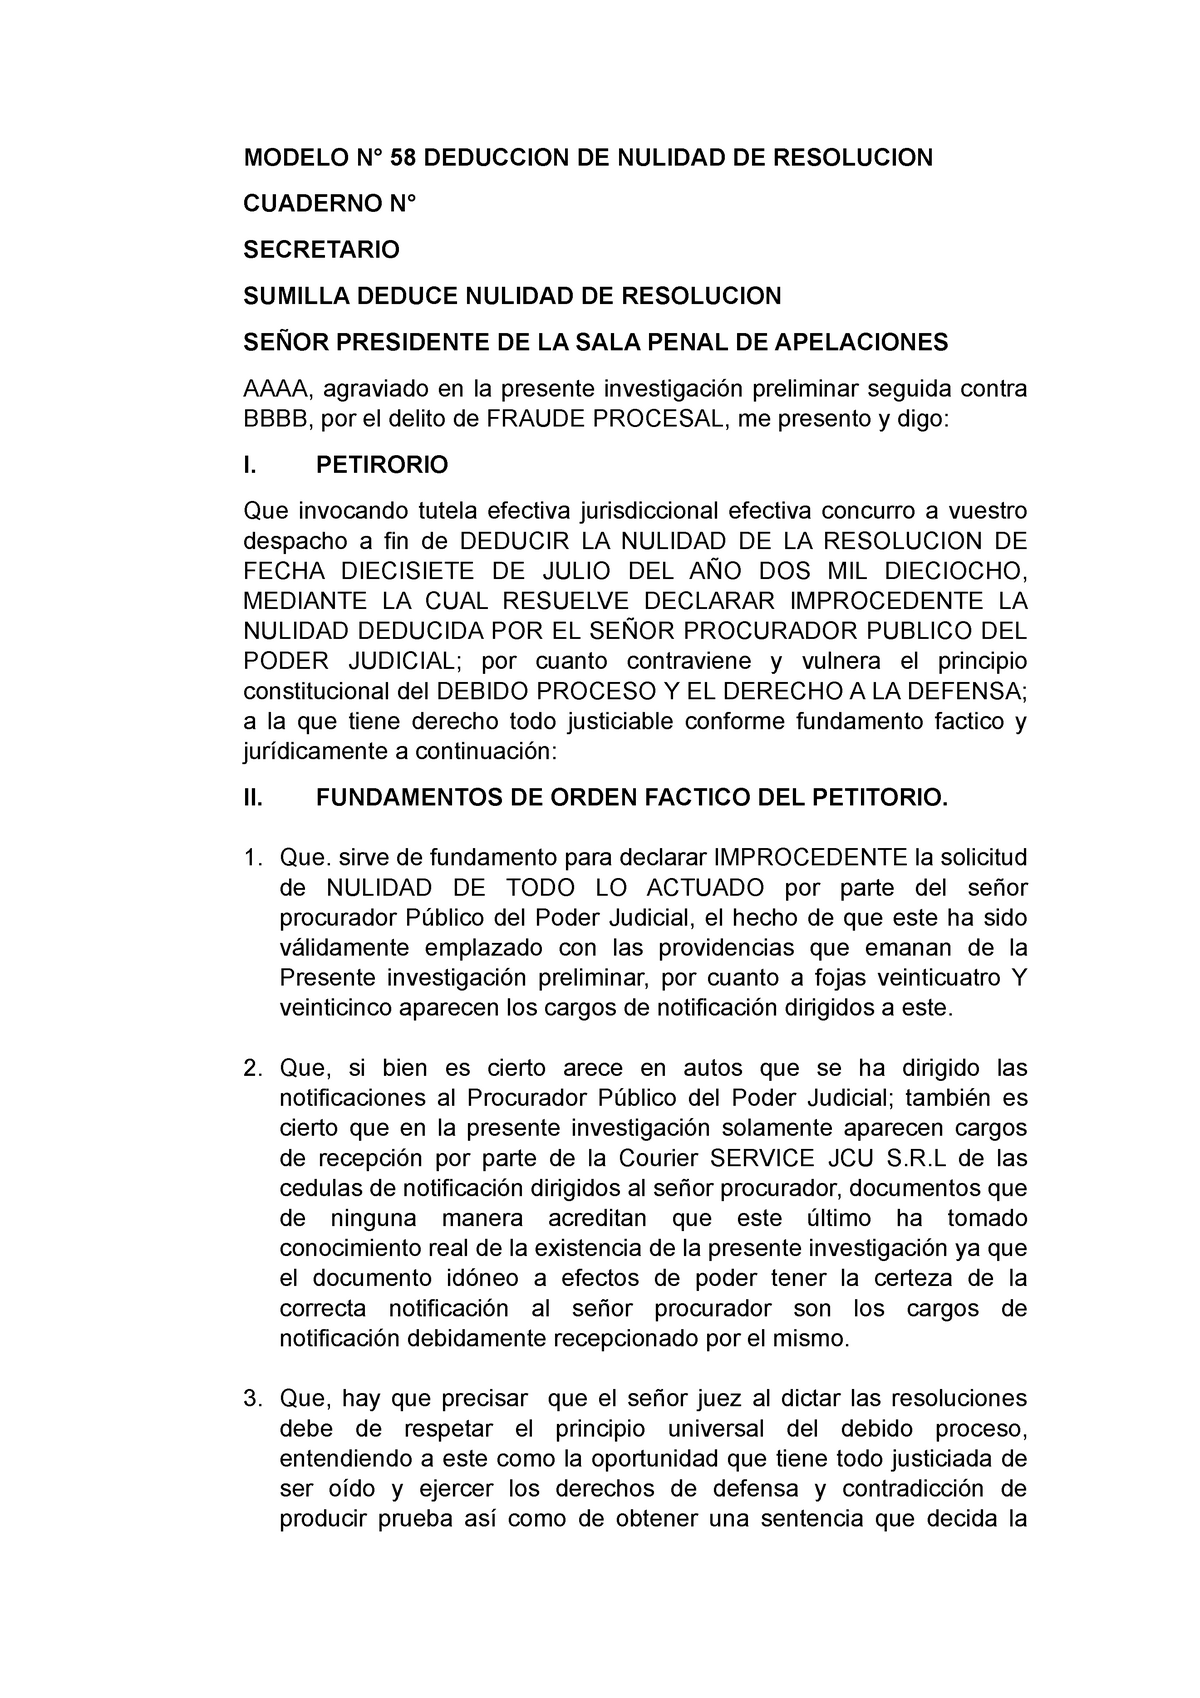  Modelo DE Deduccion DE Nulidad DE Resolucion - MODELO N° 58 DEDUCCION  DE NULIDAD DE RESOLUCION - Studocu